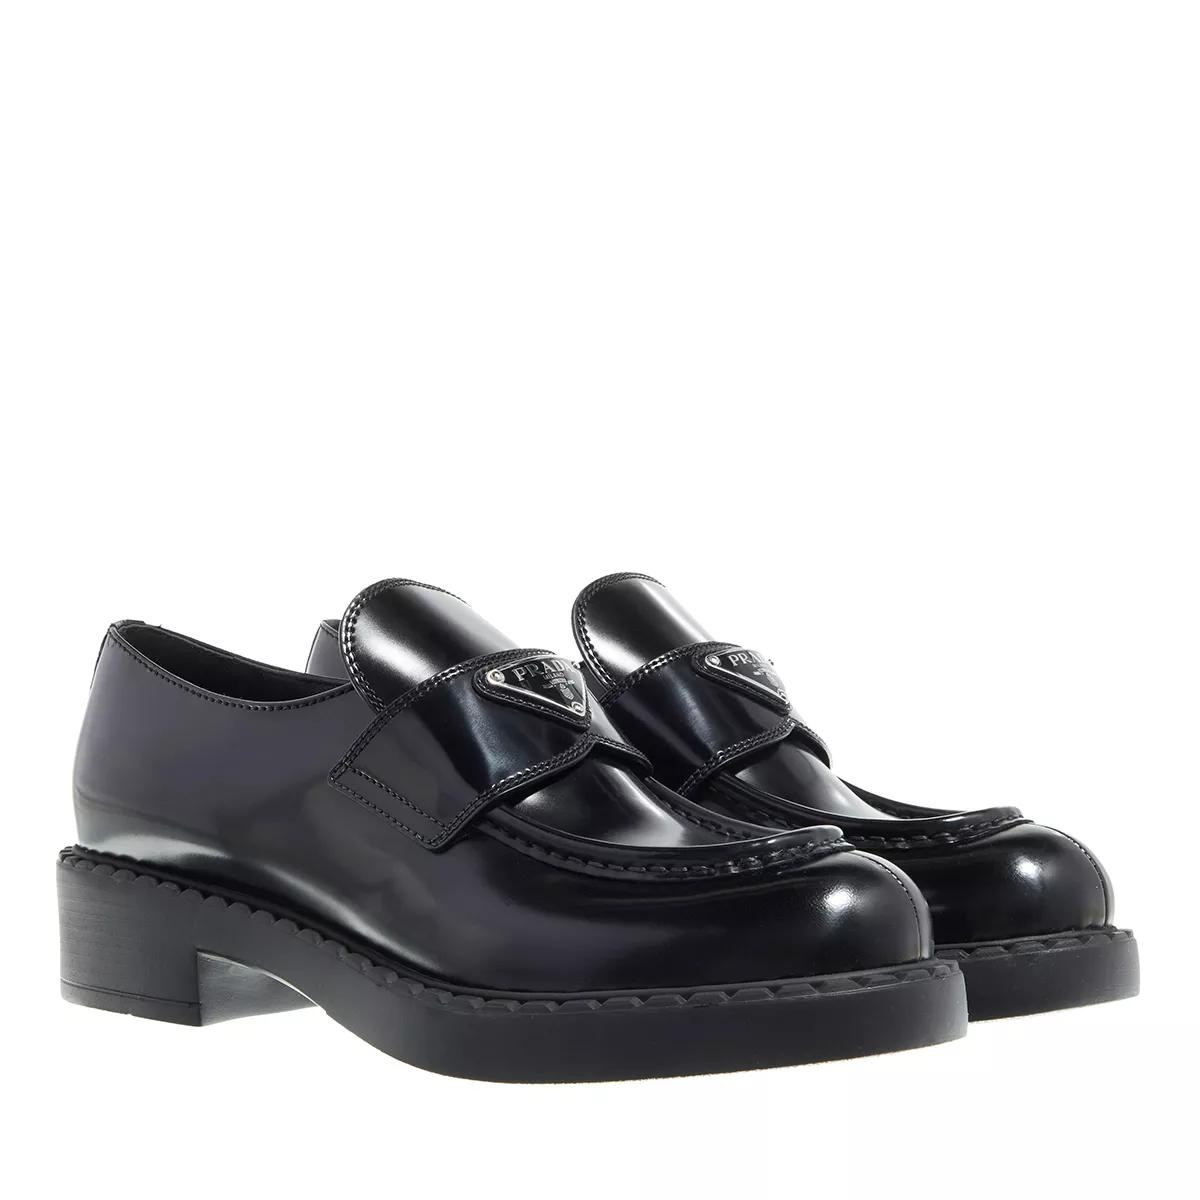 Prada Loafers & Ballerinas - Brushed Leather Loafers - Gr. 37 (EU) - in Schwarz - für Damen von Prada